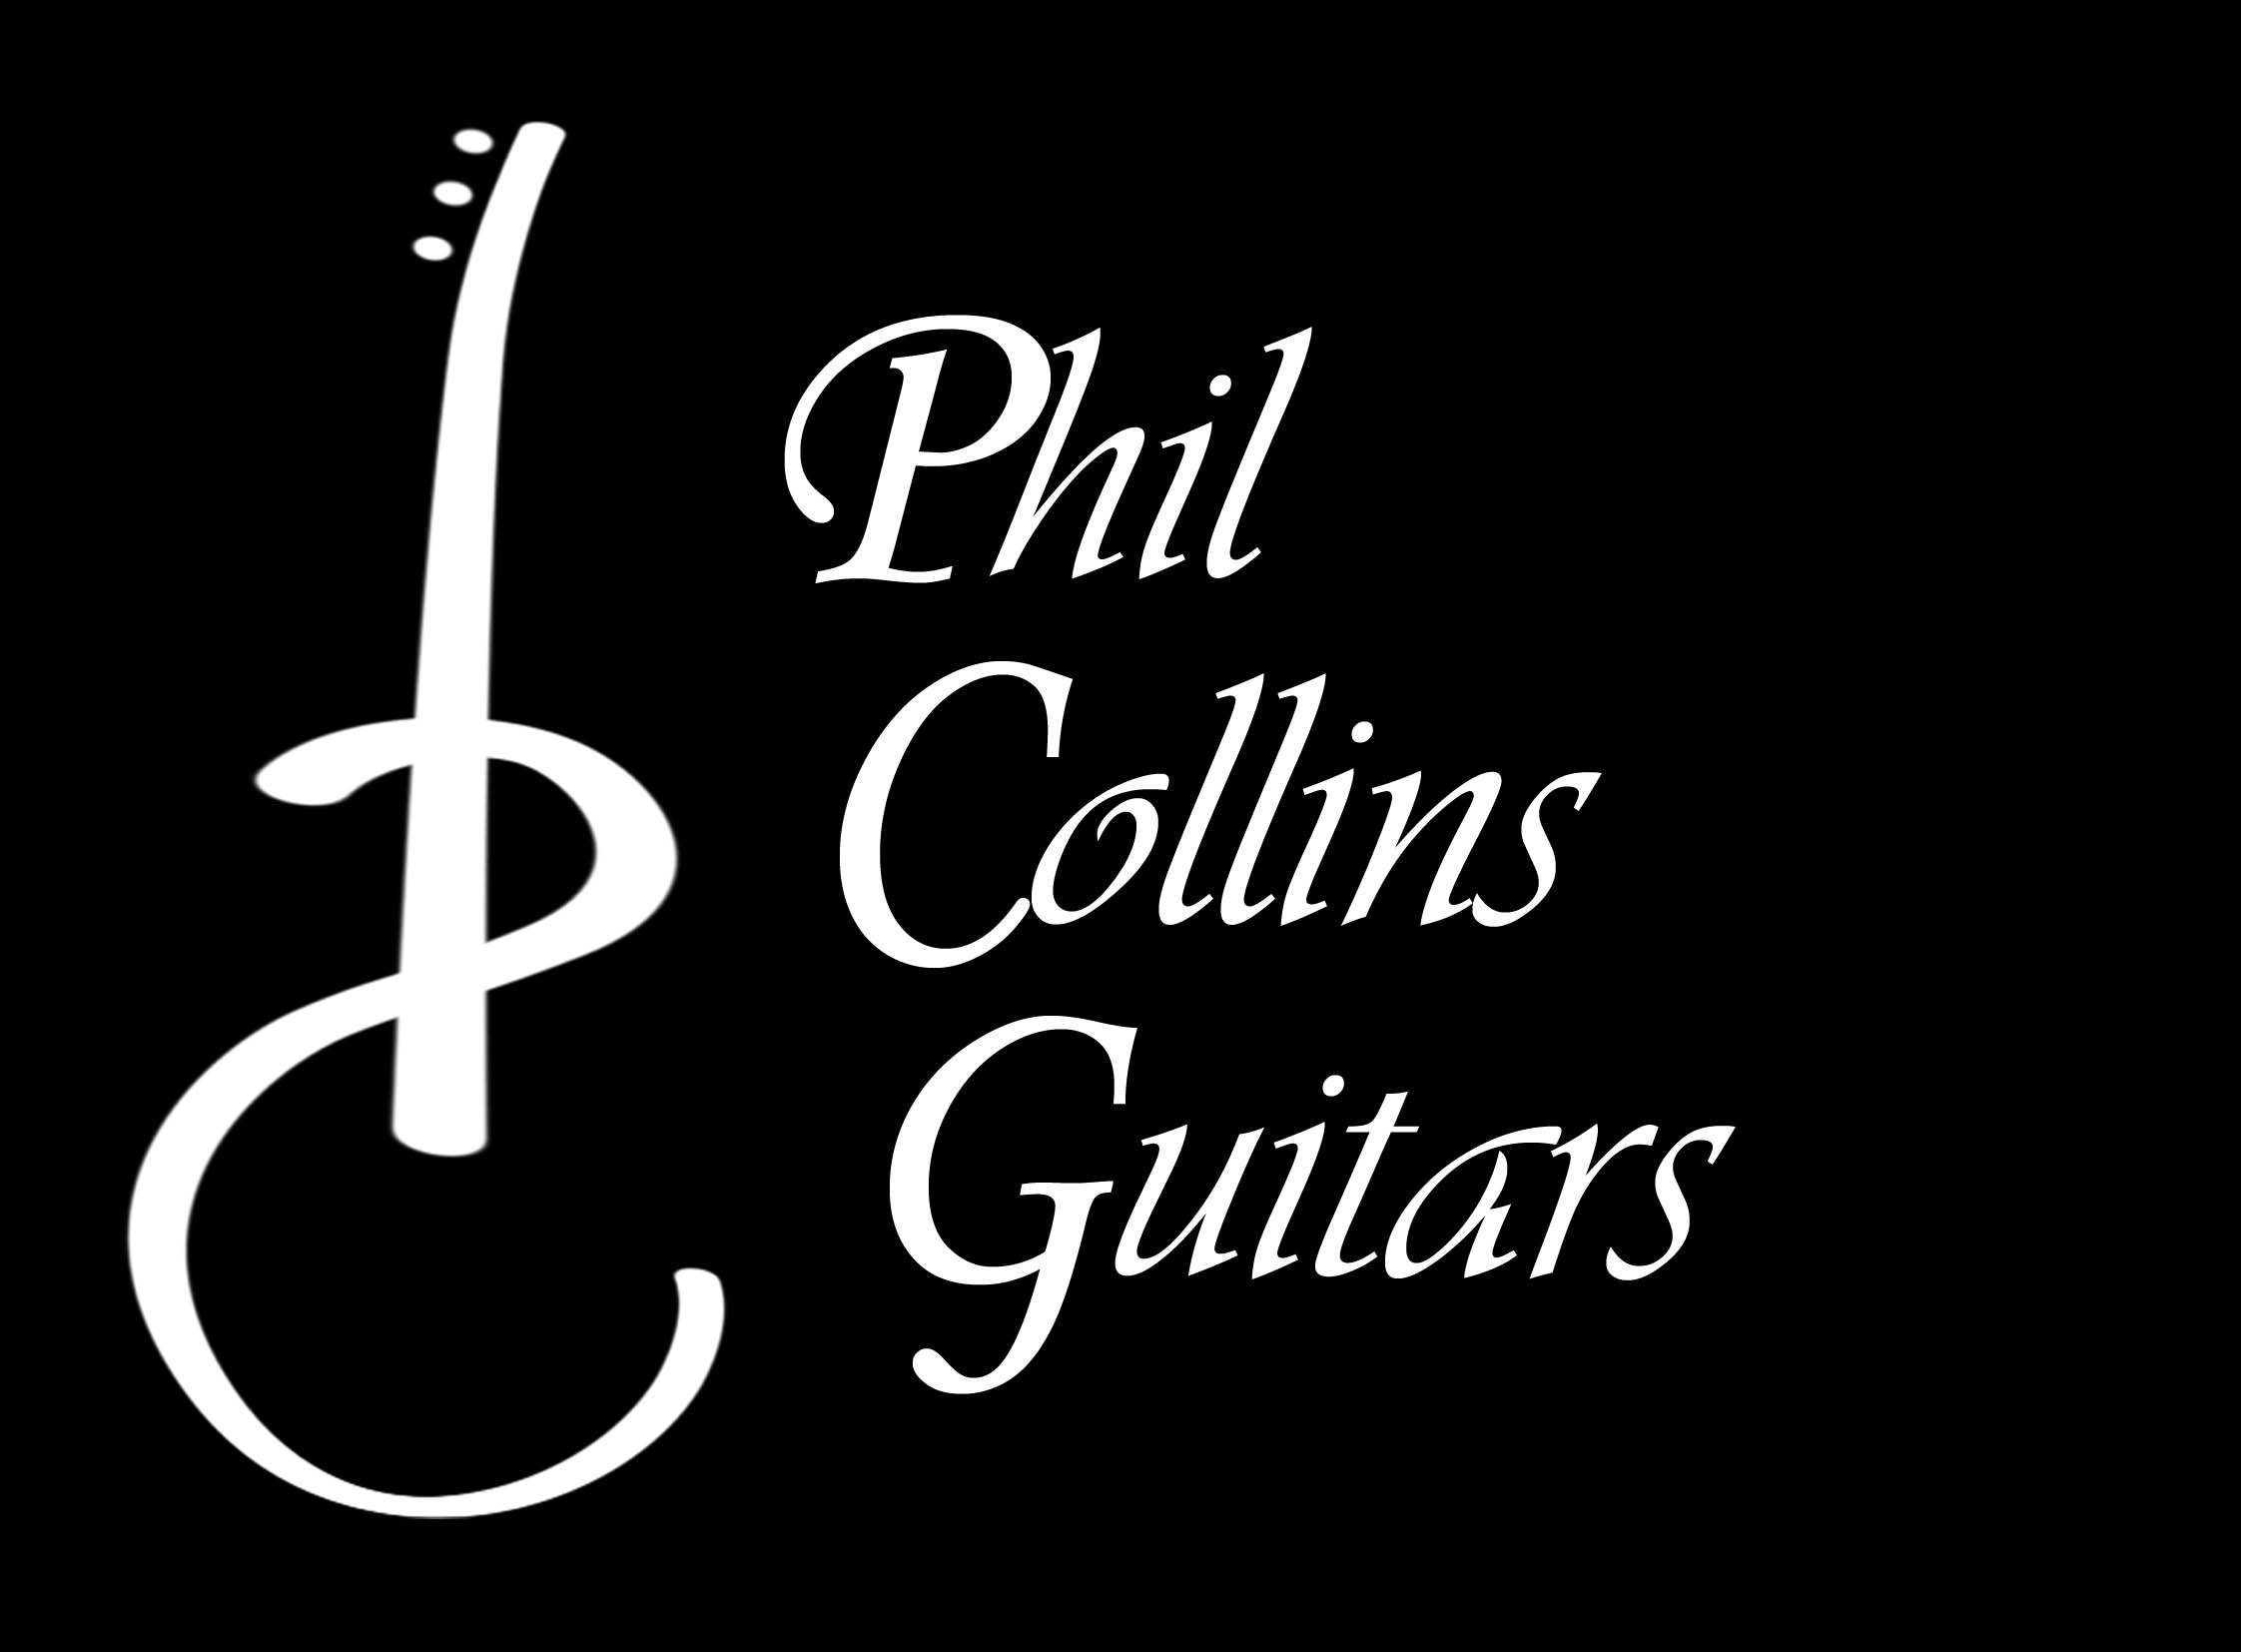 Phil Collins Guitars